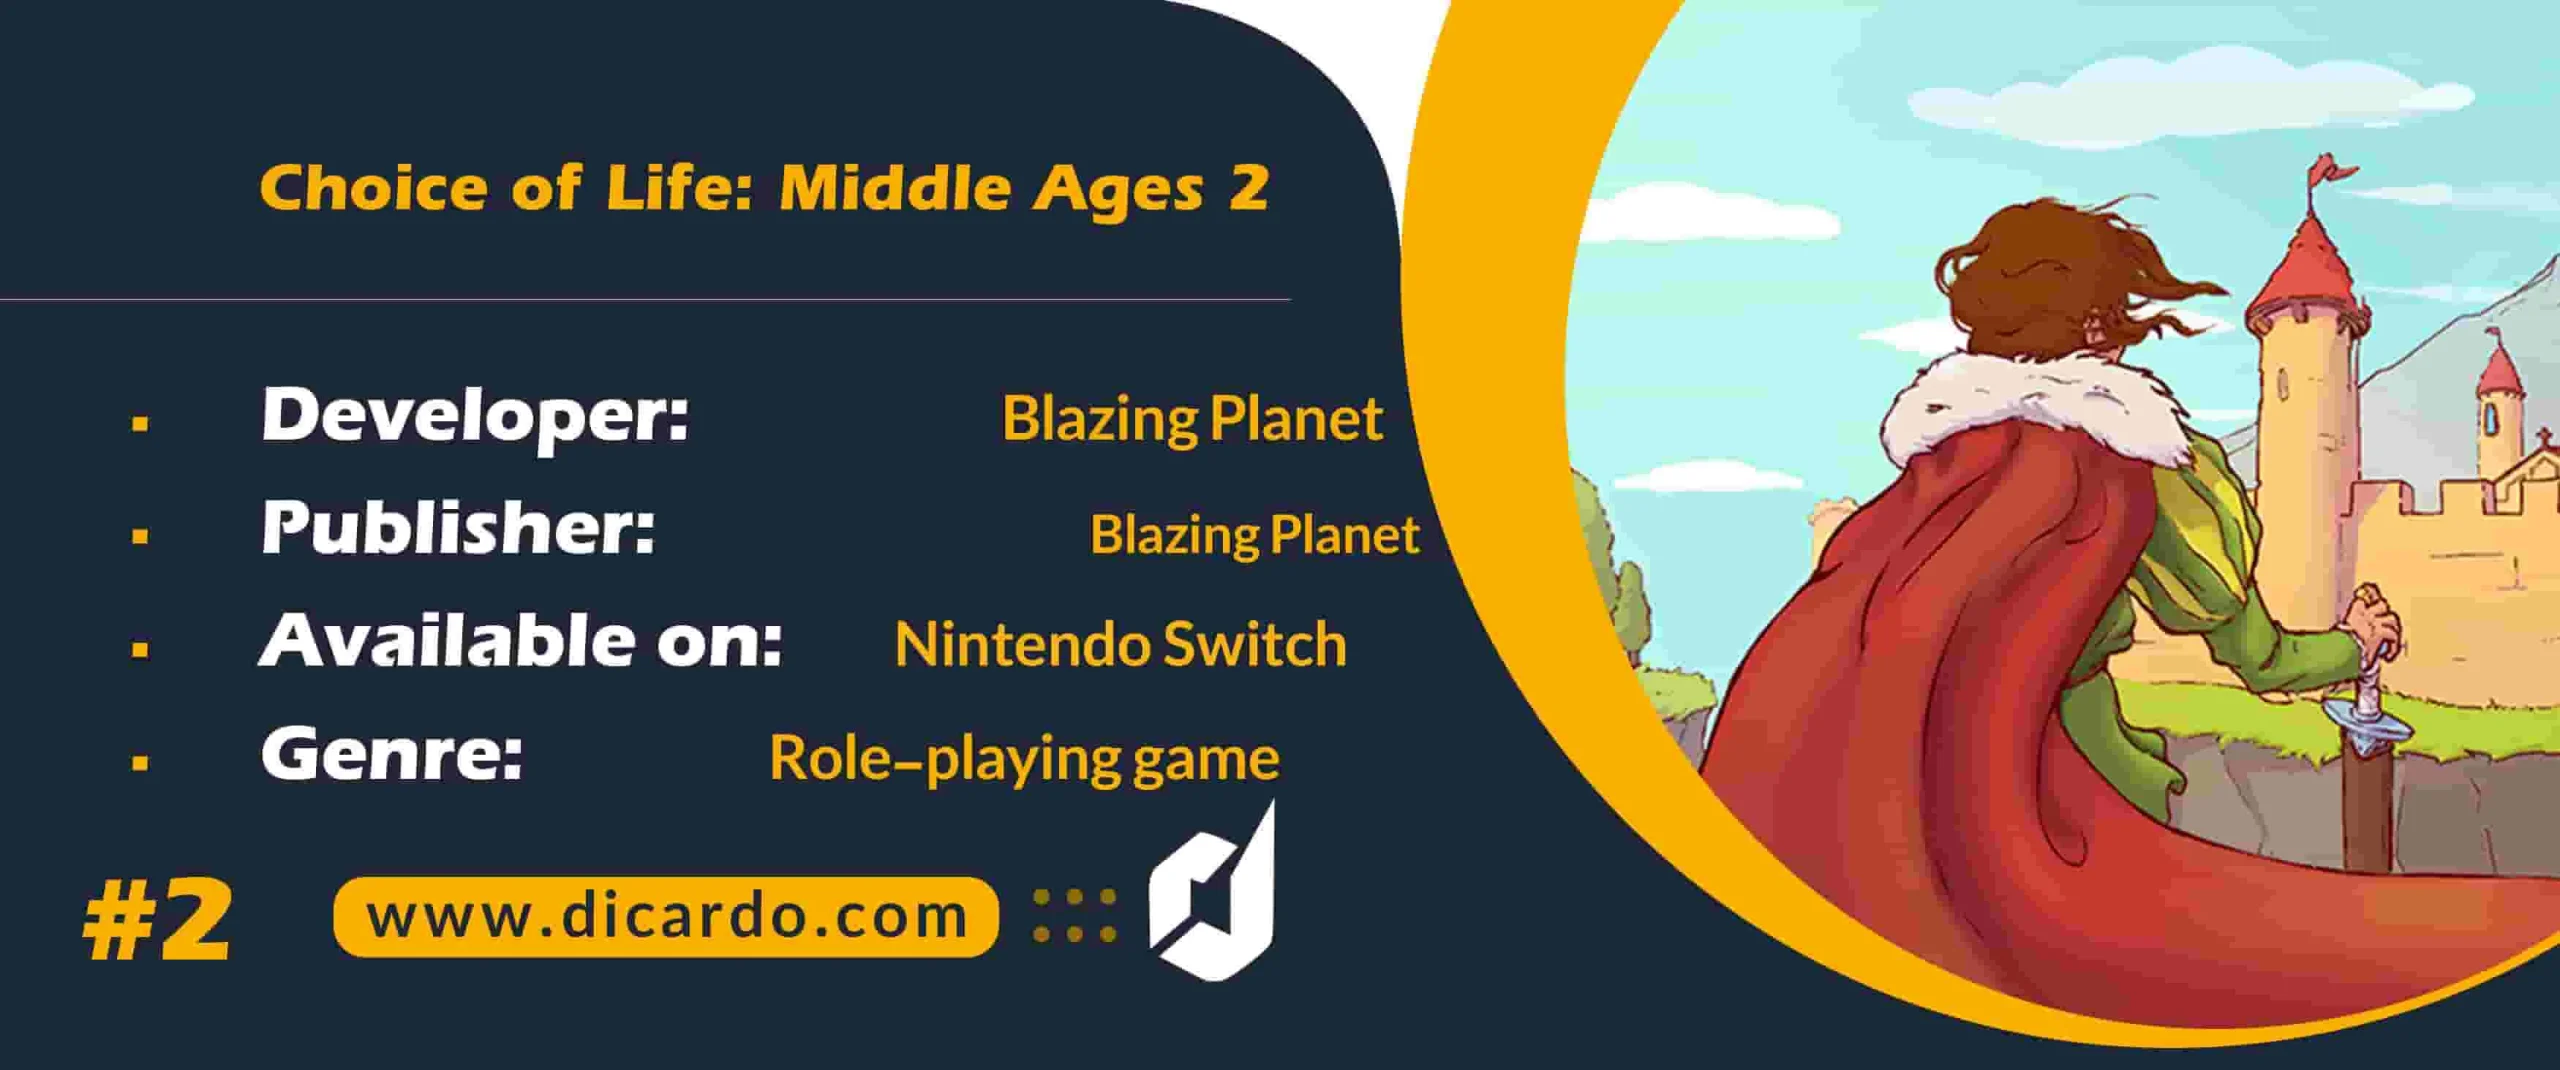 #2 چویز آف لایف میدل ایجز 2 Choice of Life: Middle Ages 2 رتبه دوم بازیهای نینتندو سوییچ سال 2023 